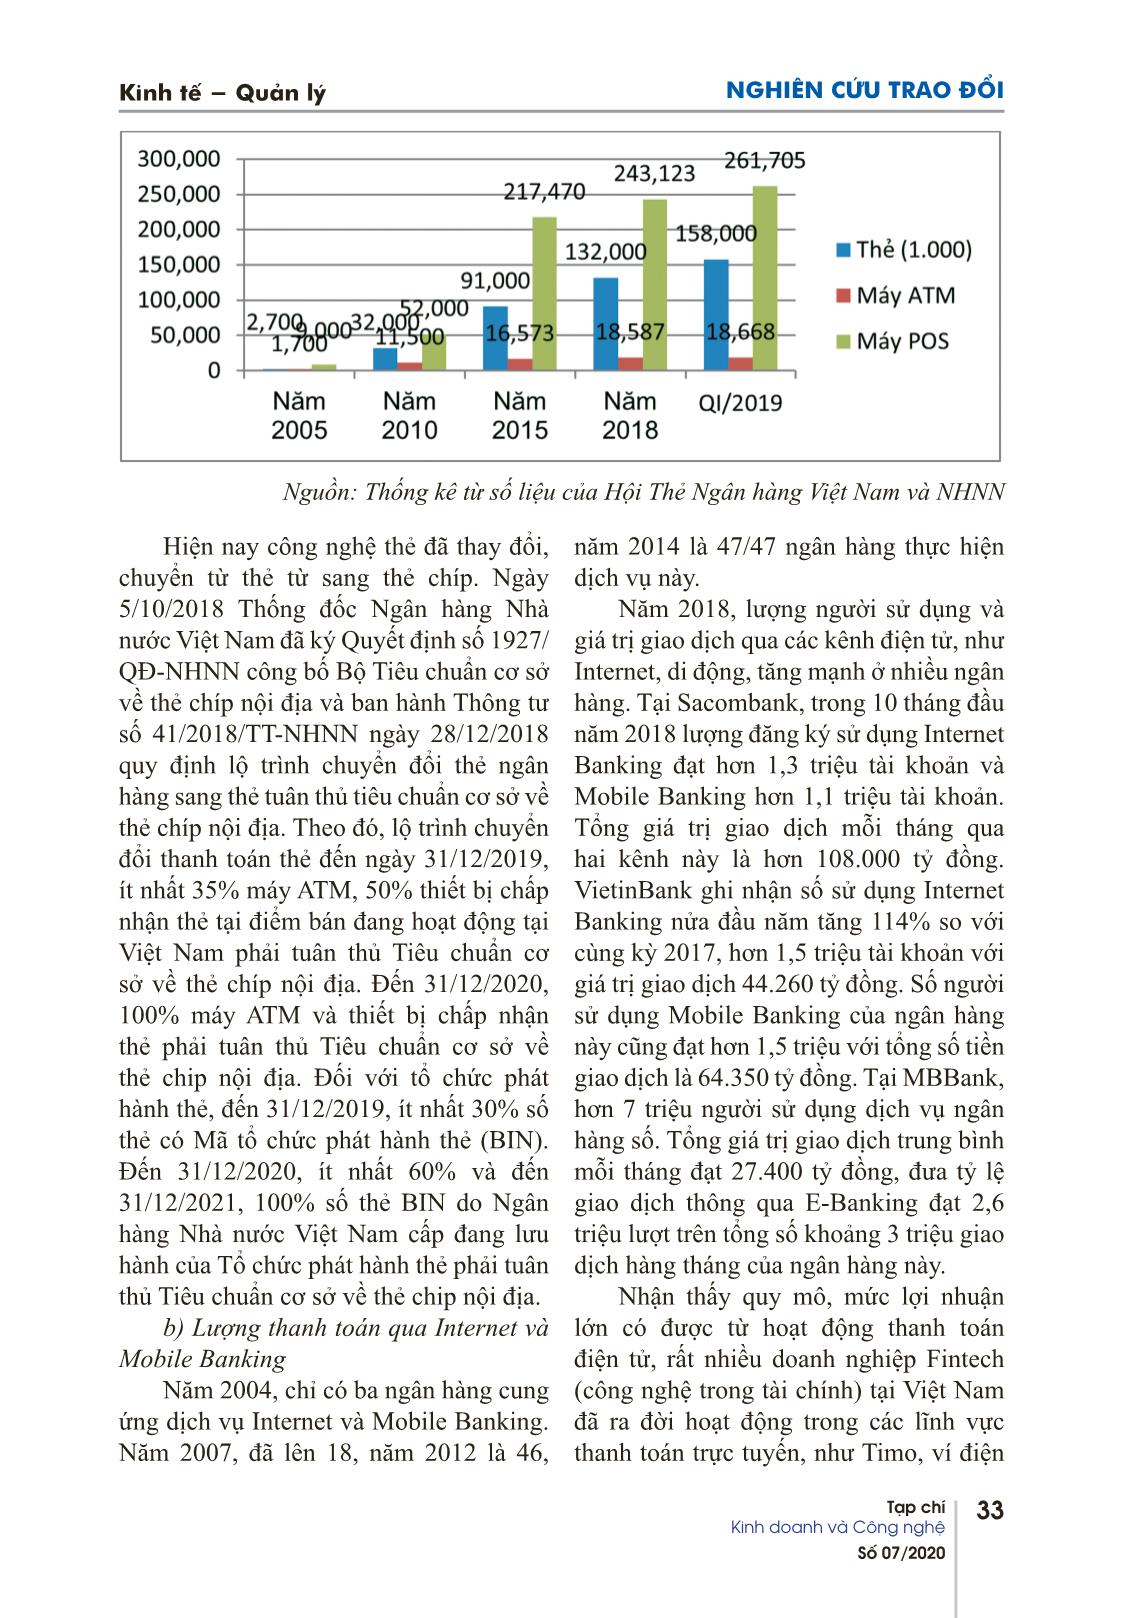 Dịch vụ ngân hàng điện tử: thời cơ và thách thức cho các ngân hàng thương mại Việt Nam trang 4